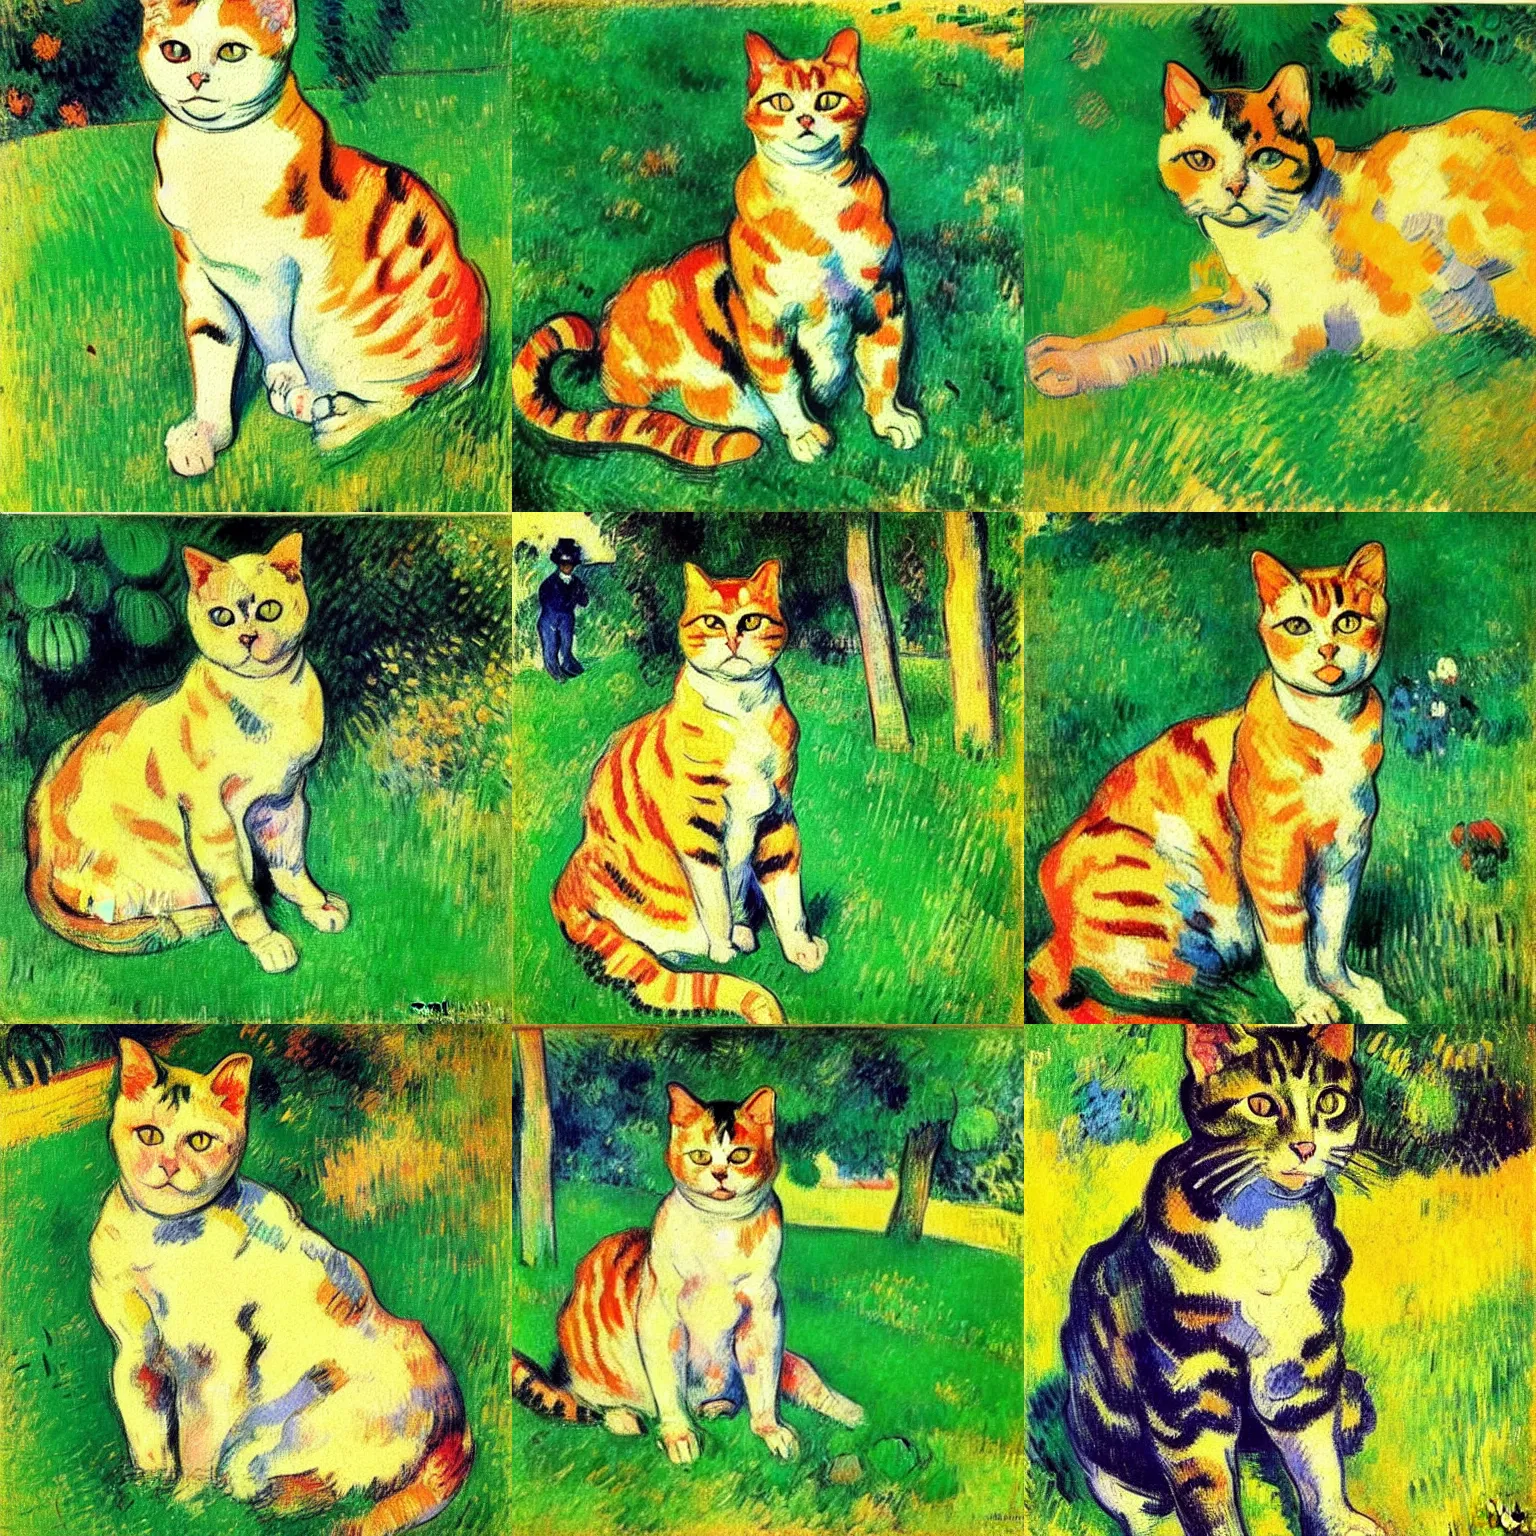 Prompt: beautiful cute portrait post - impressionist painting of a cat in the grass, by henri de toulouse - lautrec, camille pissarro, paul cezanne, henri rousseau, vincent van gogh, henri - edmond